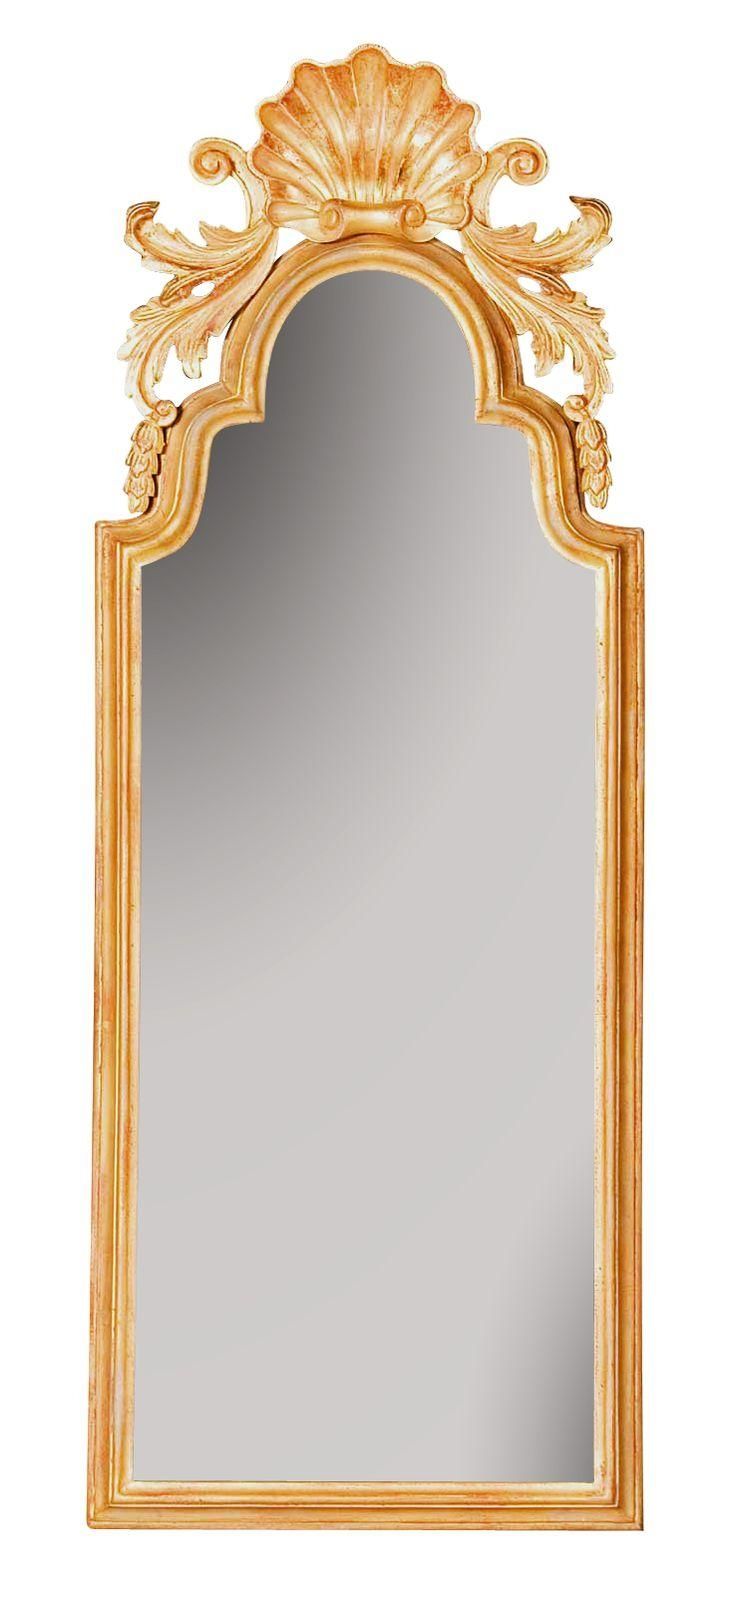 62 Best Custom Mirrors Images On Pinterest | Custom Mirrors With Orlando Custom Mirrors (View 16 of 20)